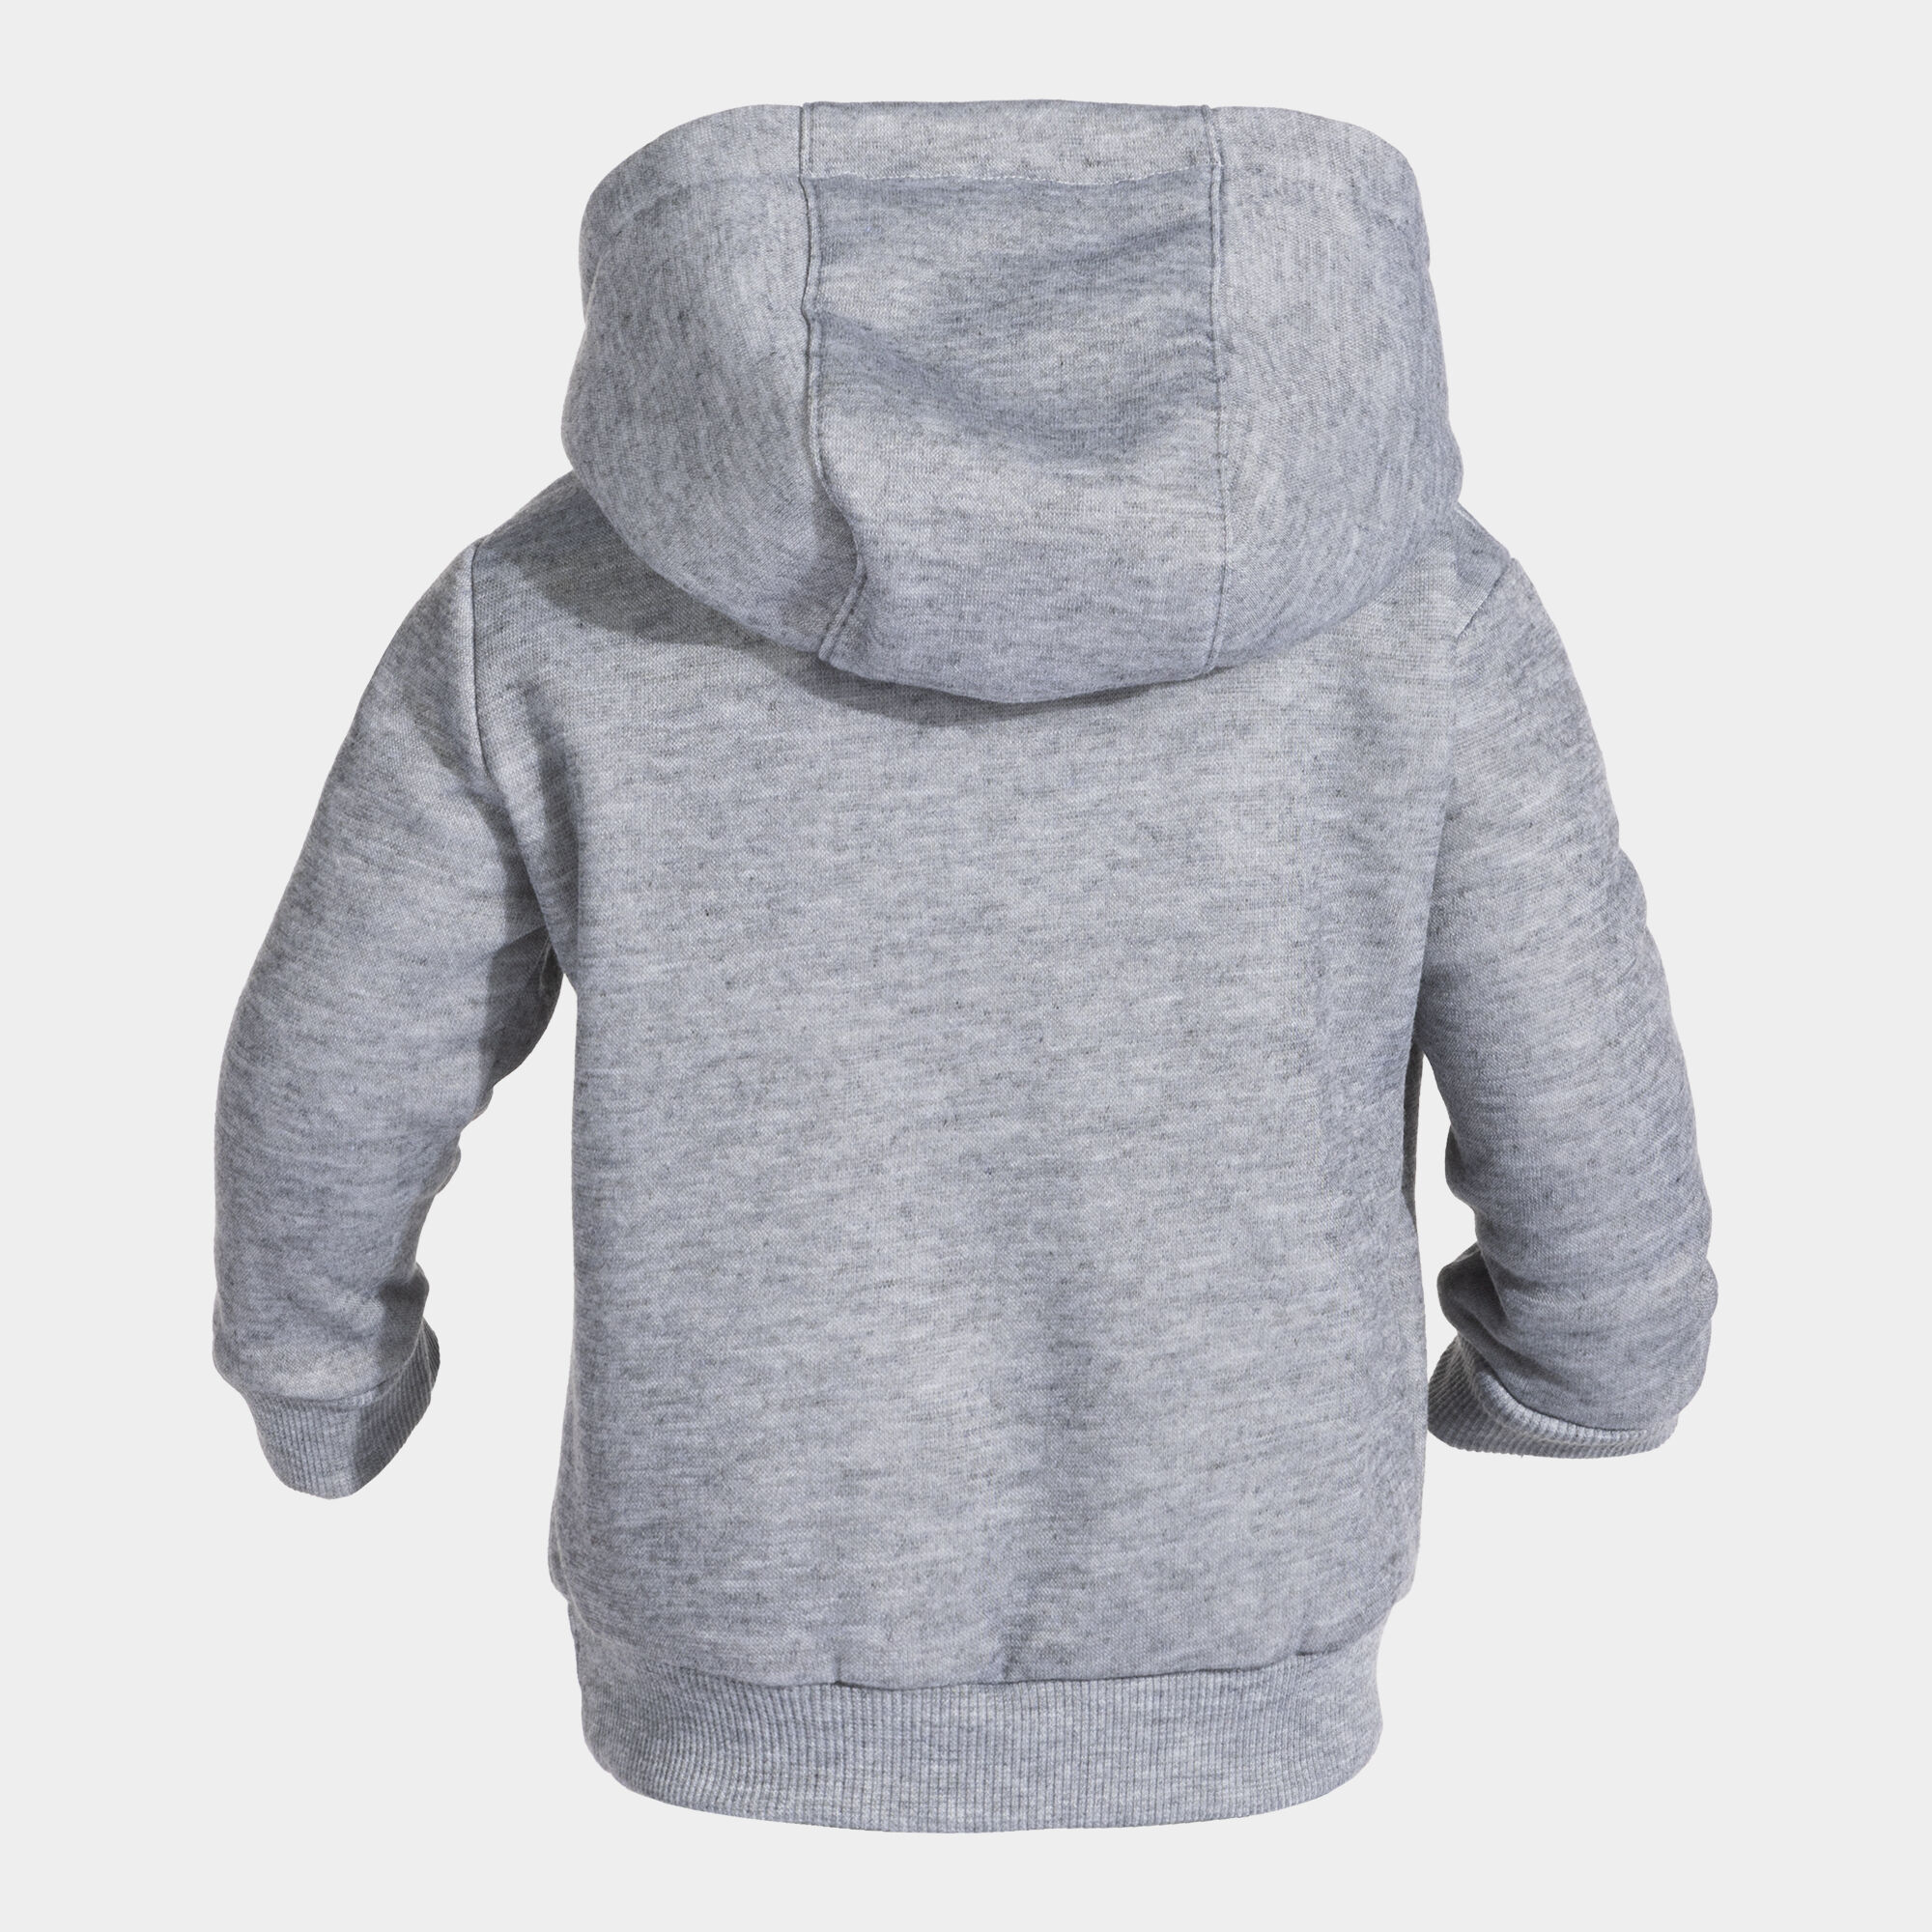 Hooded sweater junior Lion melange gray